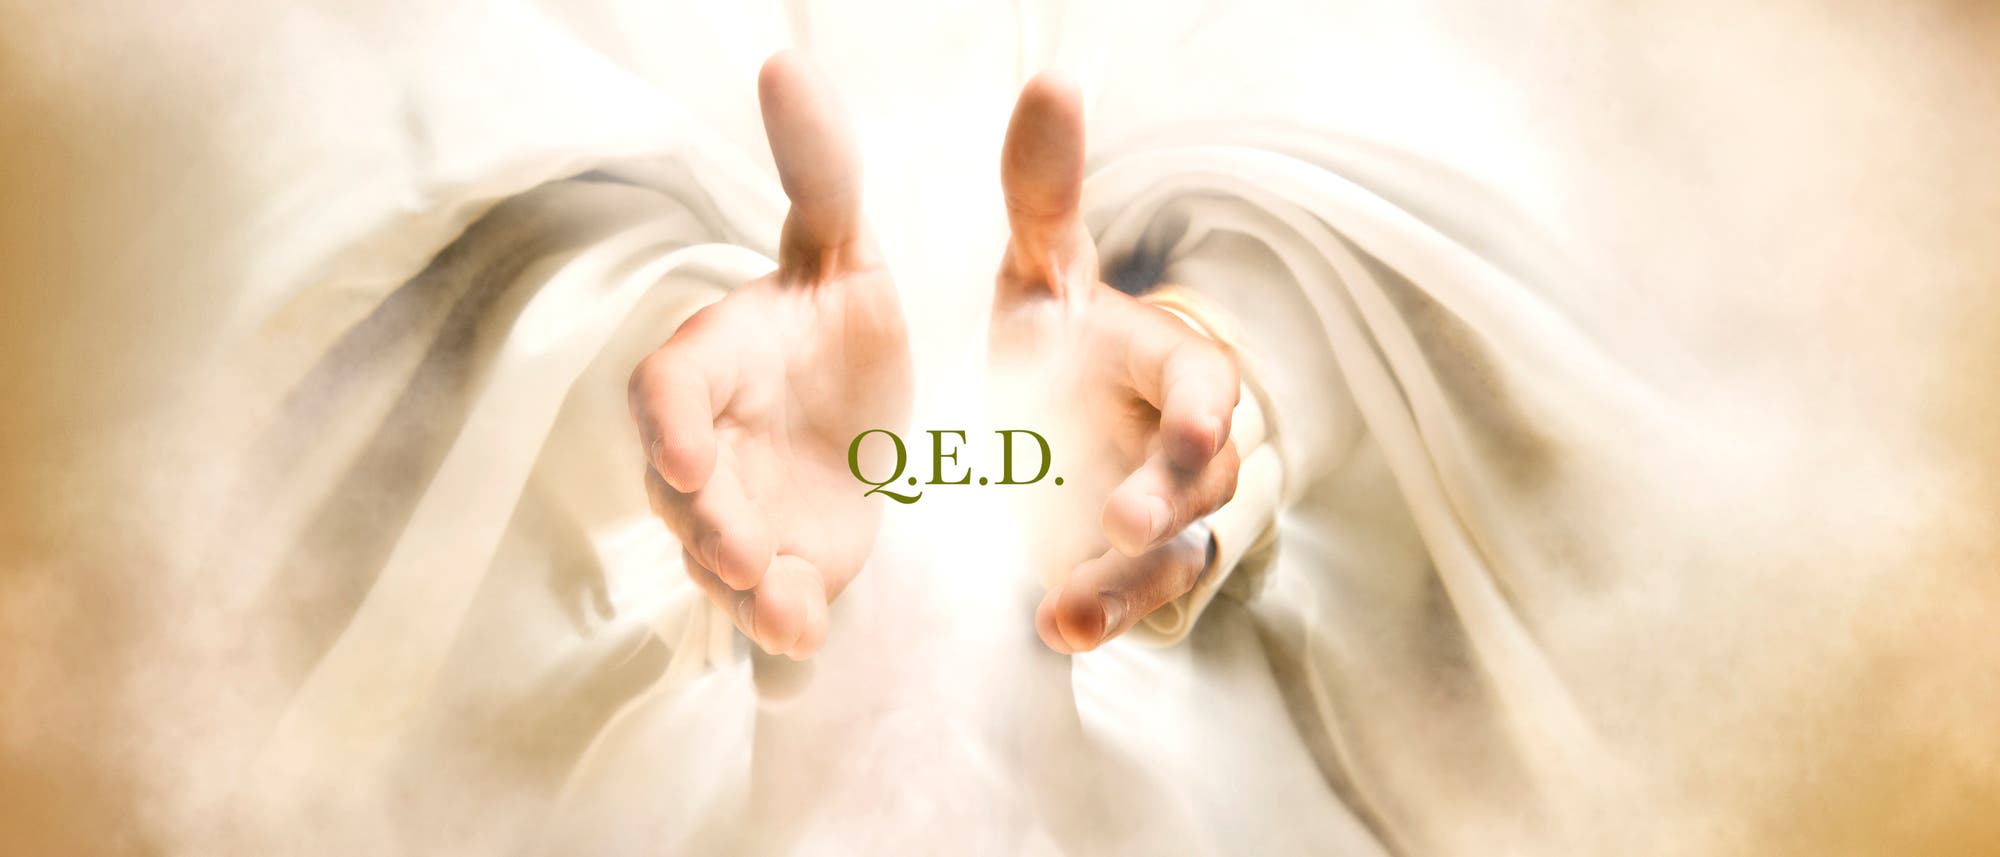 Zwei göttliche Hände mit der Inschrift »QED«